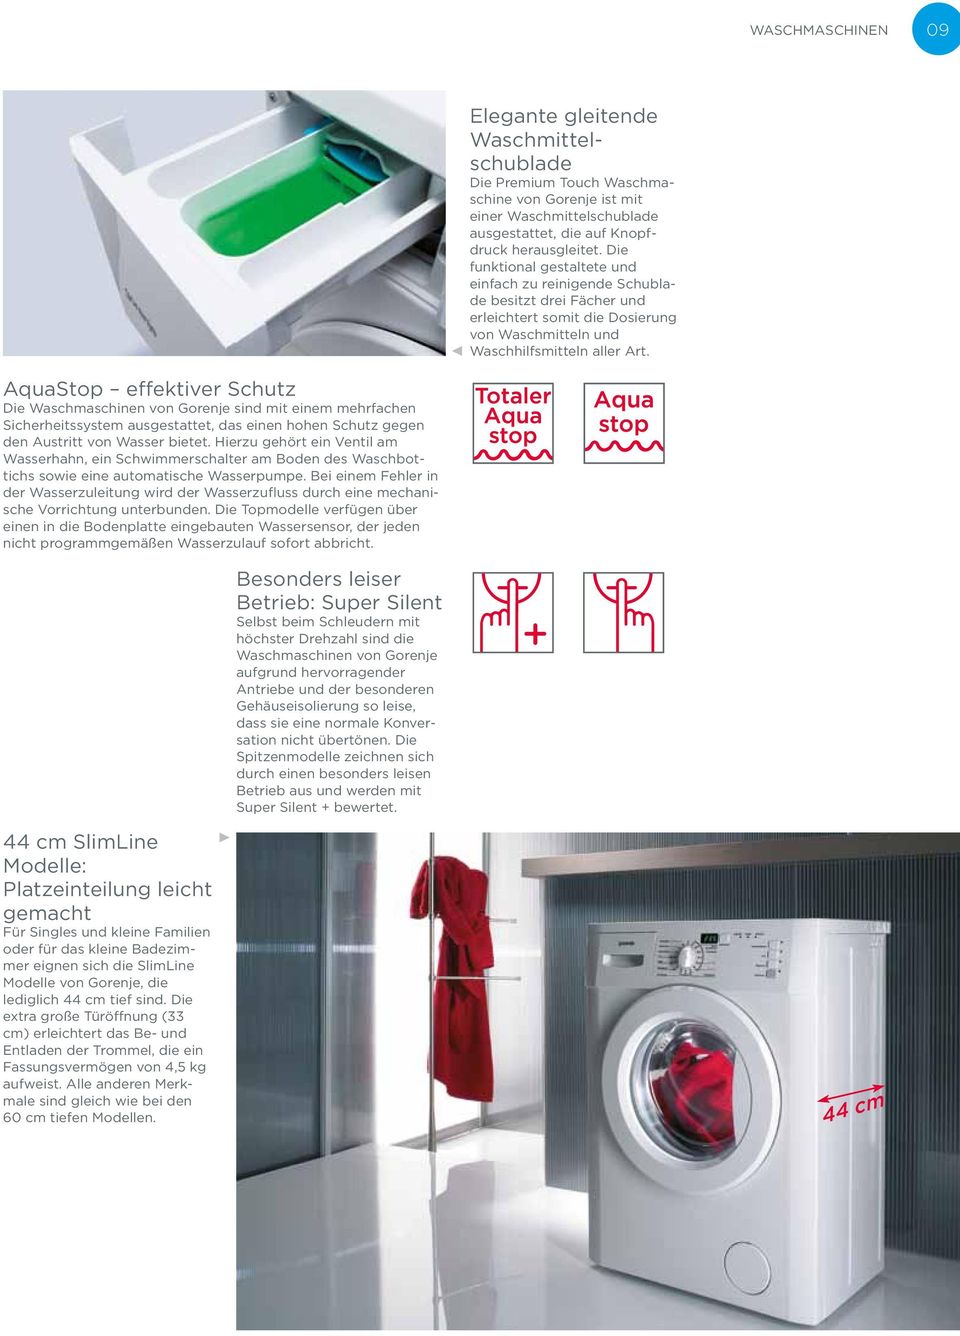 AquaStop effektiver Schutz Die Waschmaschinen von Gorenje sind mit einem mehrfachen Sicherheitssystem ausgestattet, das einen hohen Schutz gegen den Austritt von Wasser bietet.